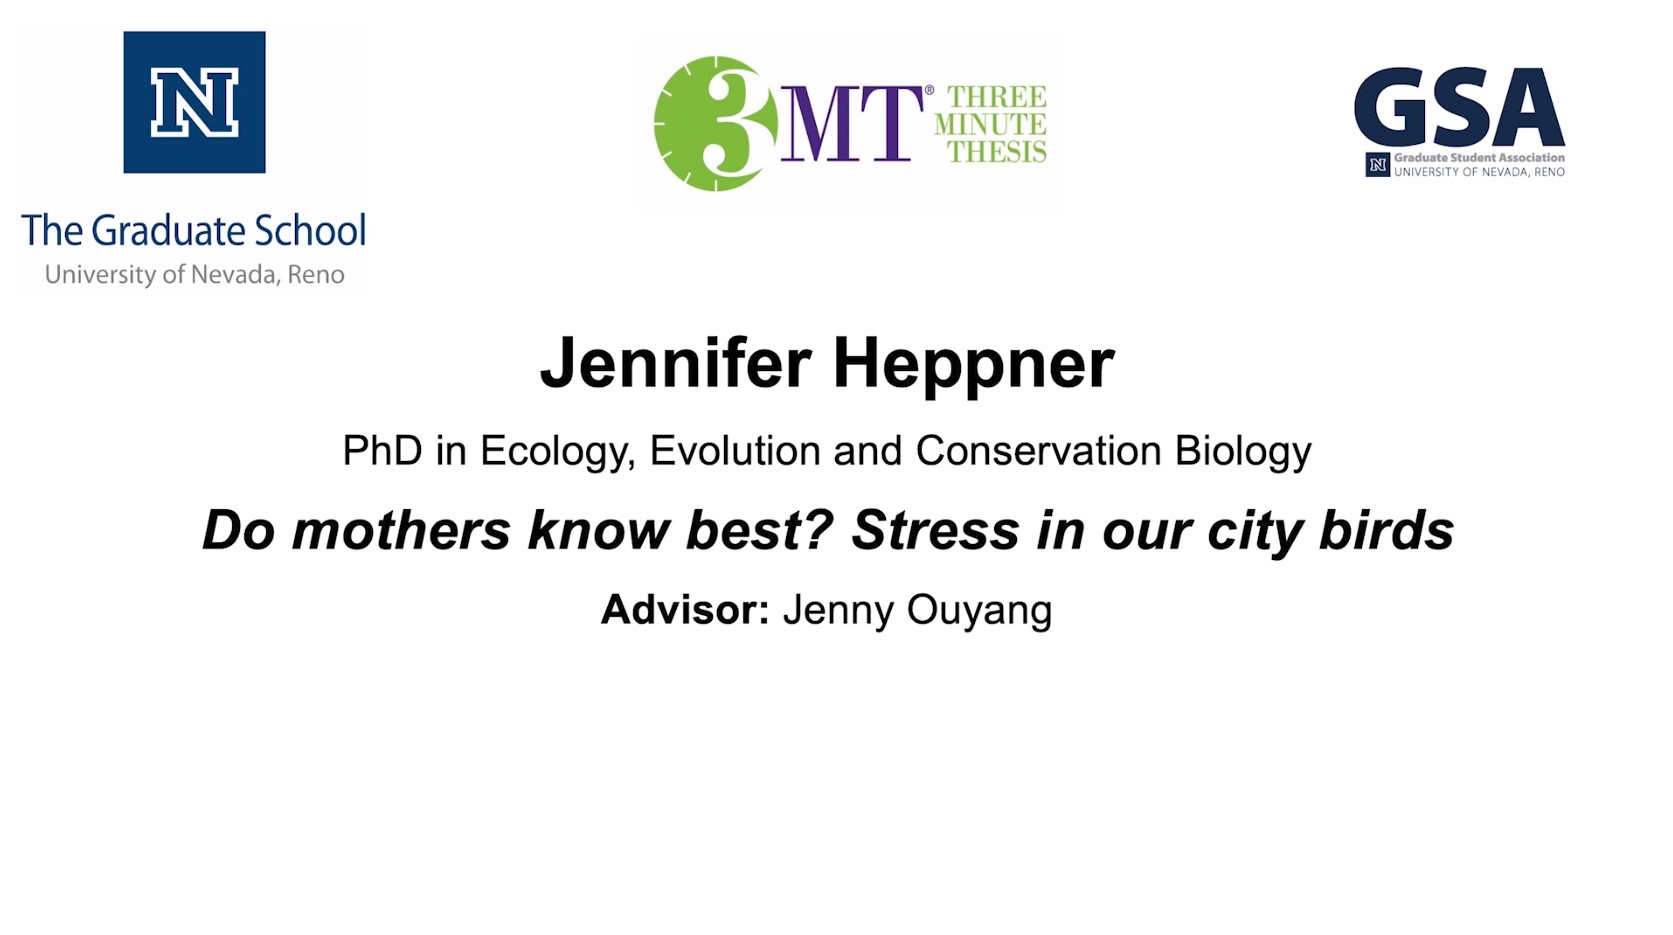 Thumbnail of Jennifer Heppner's title slide